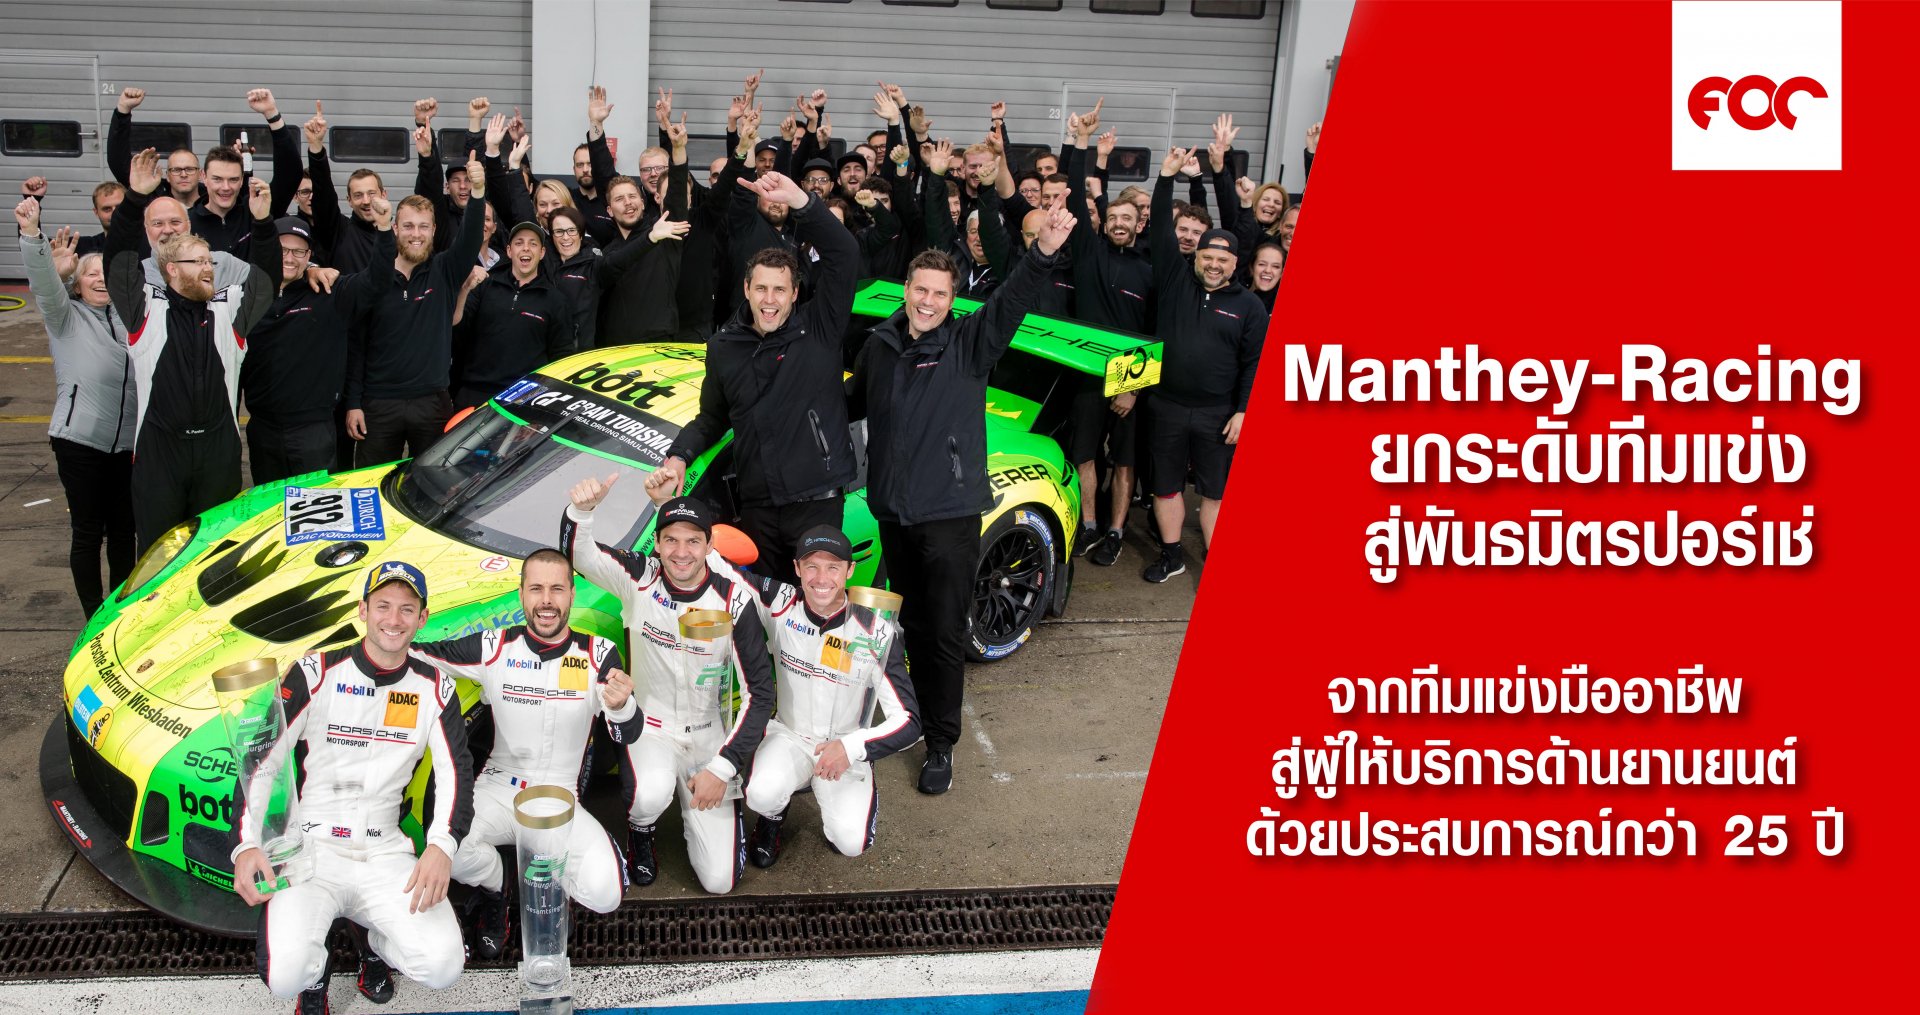 Manthey-Racing ยกระดับทีมแข่งสู่พันธมิตรทางธุรกิจของปอร์เช่ จากทีมแข่งมืออาชีพ สู่ผู้ให้บริการด้านยานยนต์ ด้วยประสบการณ์ที่สั่งสมมานานกว่า 25 ปี